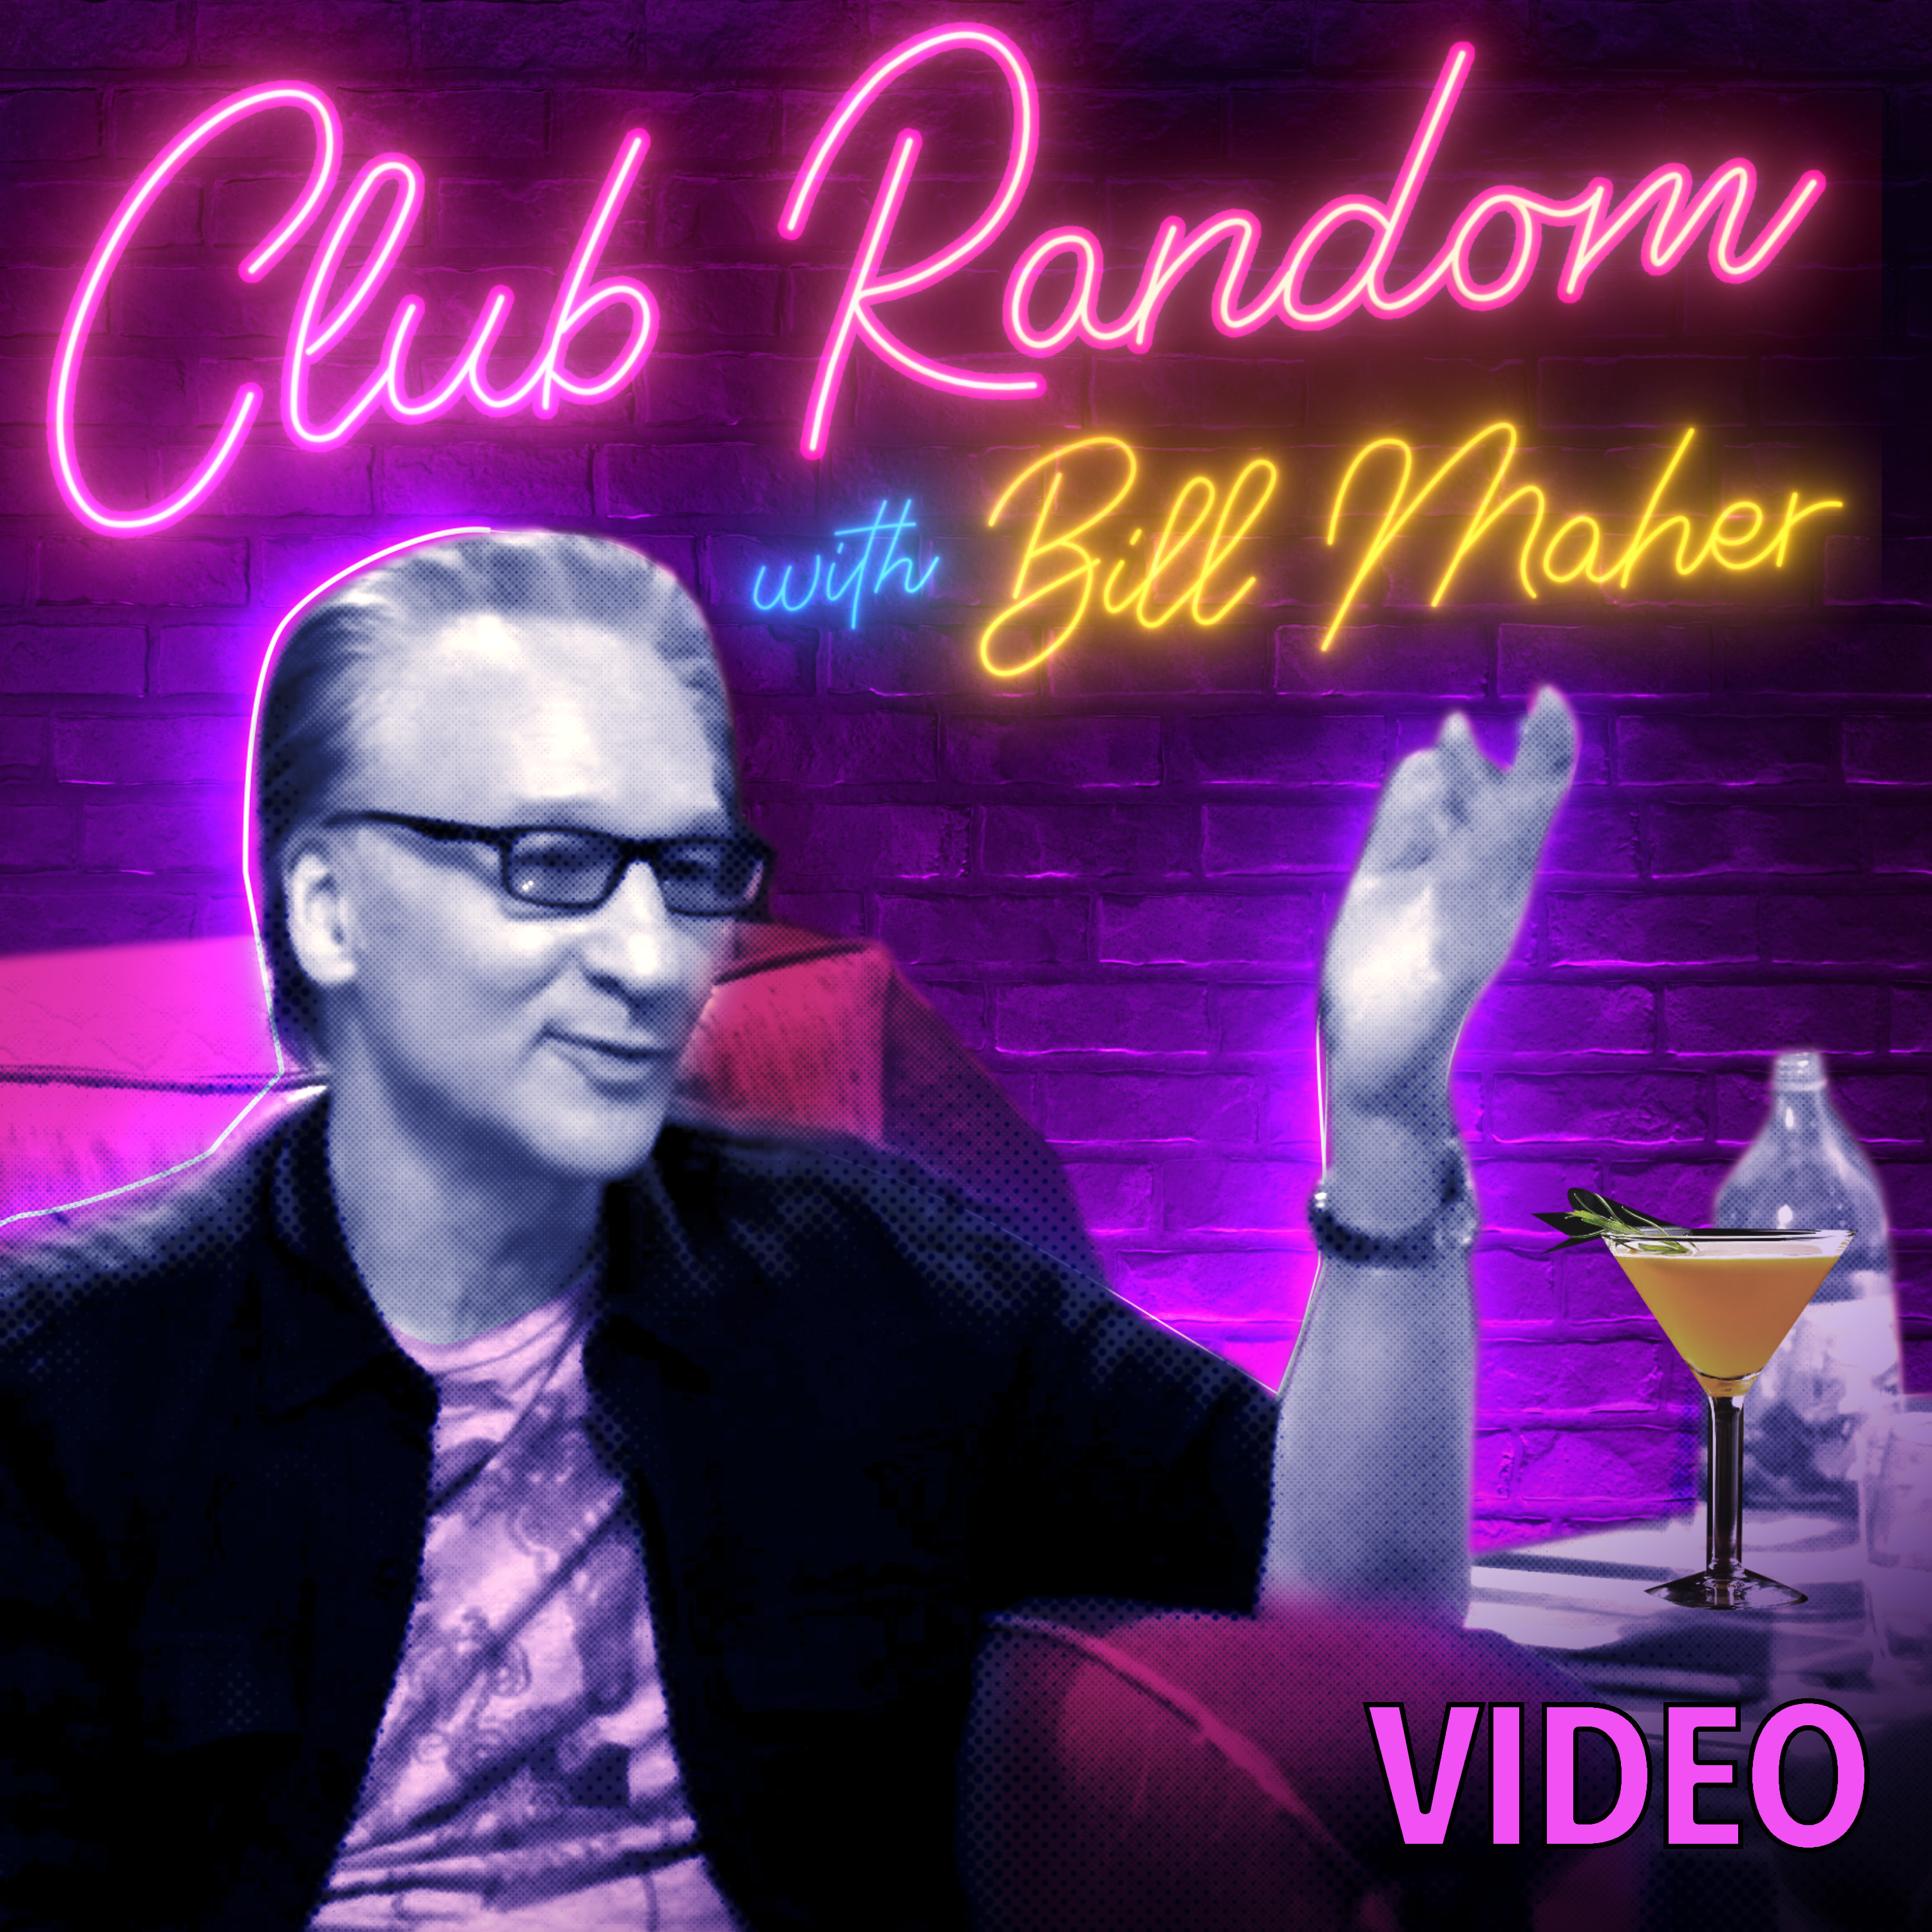 Video: David Mamet | Club Random with Bill Maher